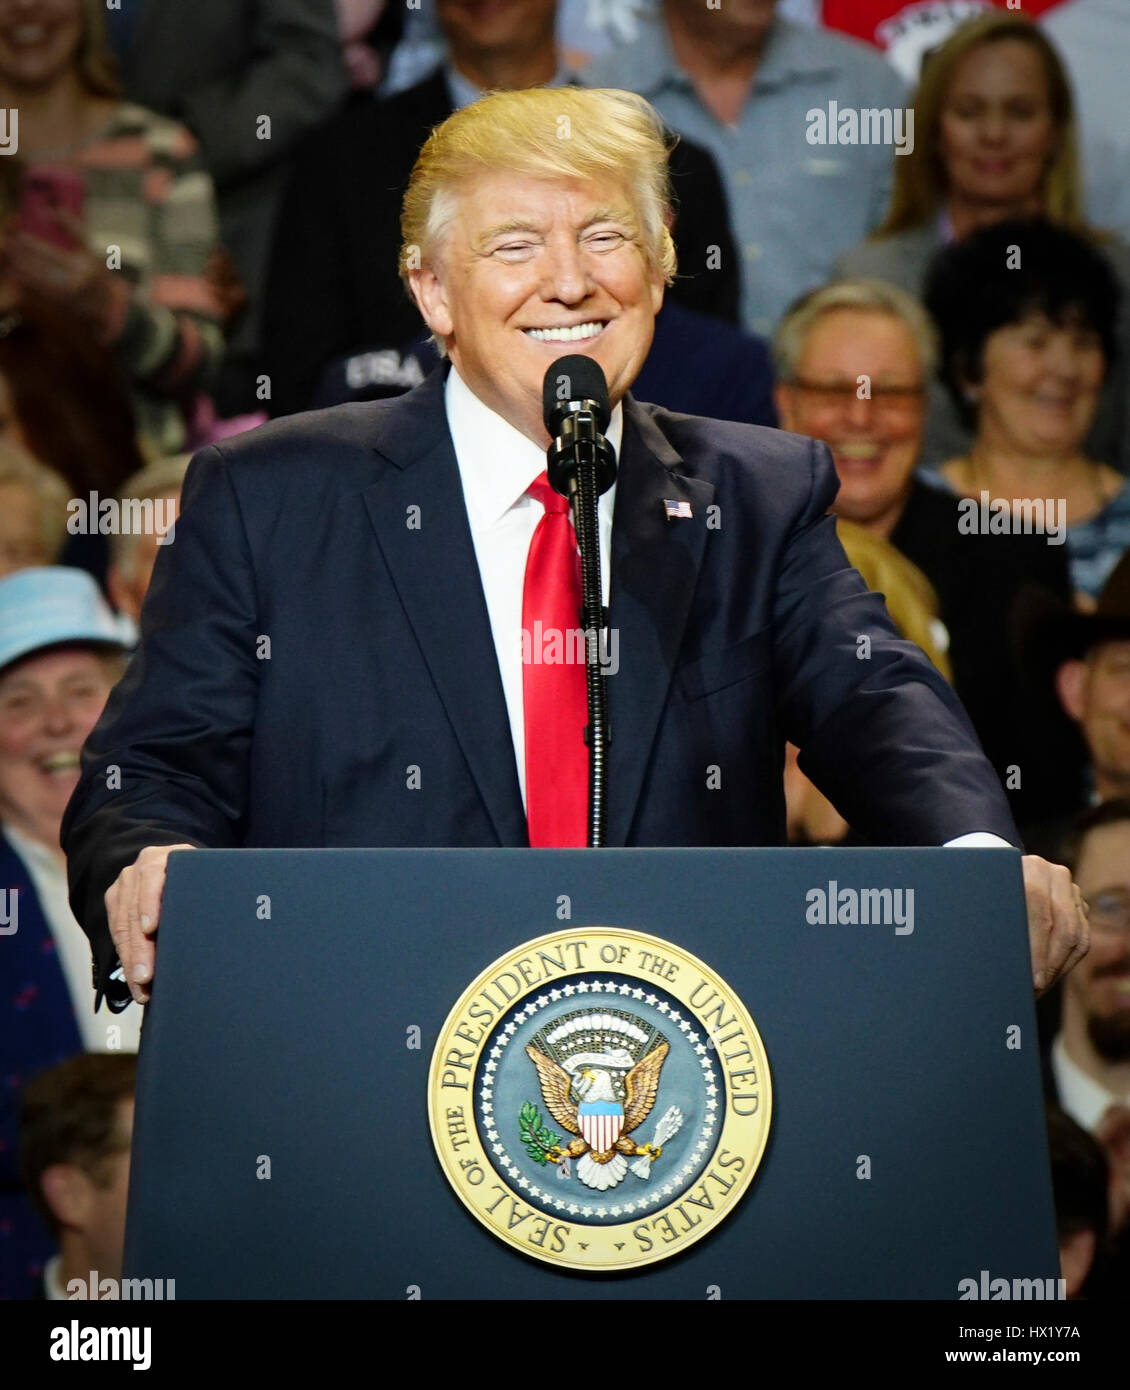 Le président Donald J. Trump s'exprimant lors d'un rassemblement à Louisville Exposition Center le 20 mars 2017 à Louisville, Kentucky. Banque D'Images